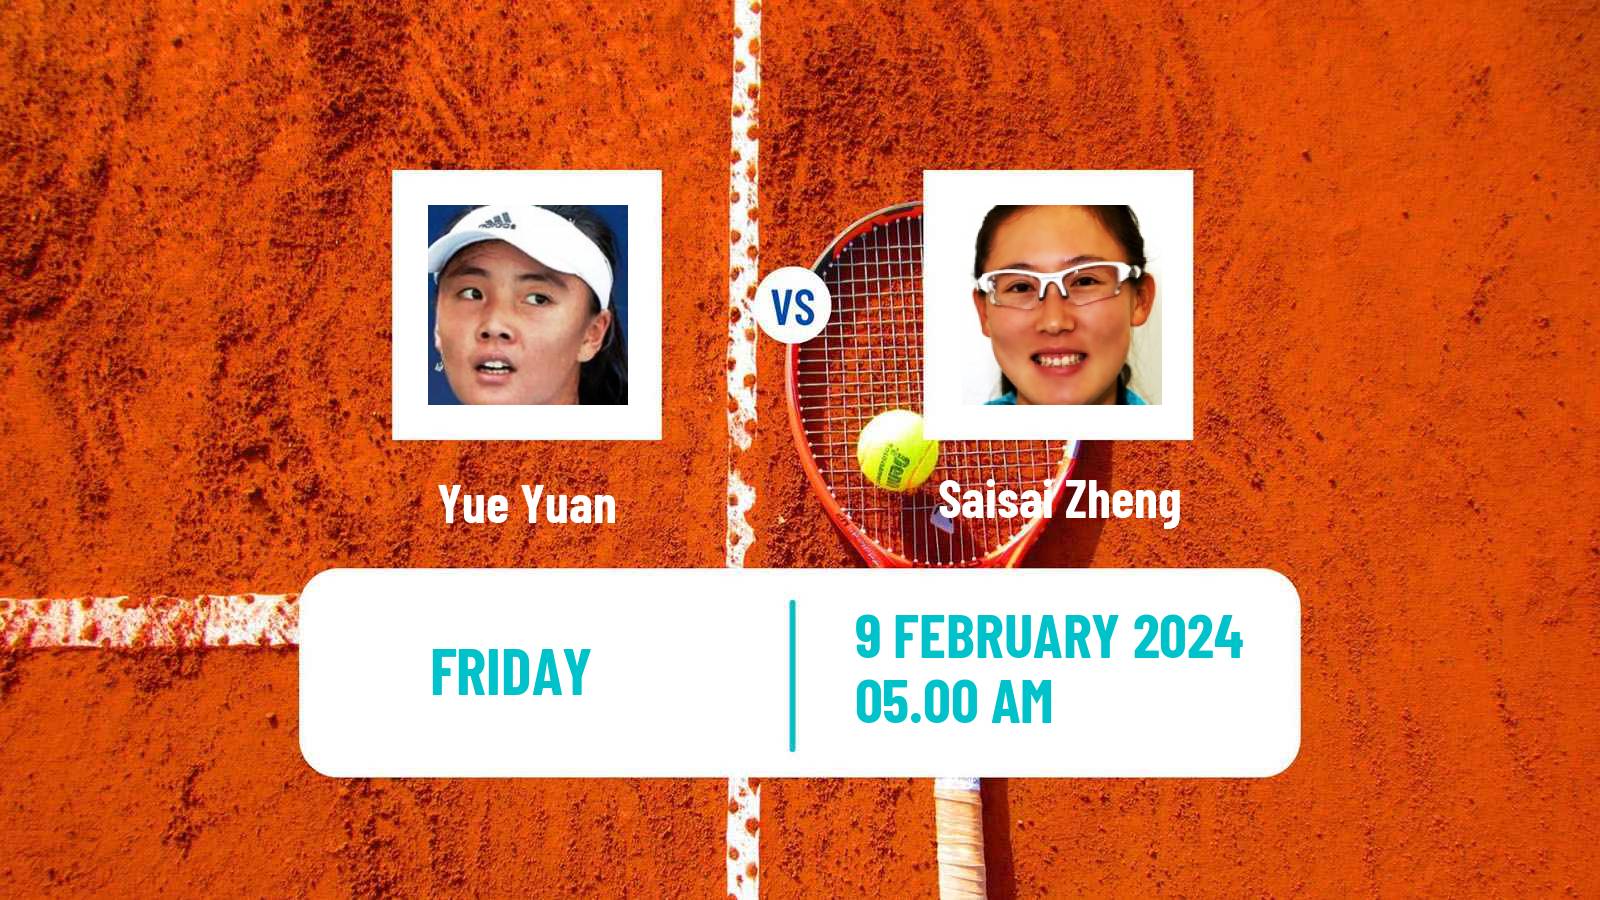 Tennis WTA Doha Yue Yuan - Saisai Zheng